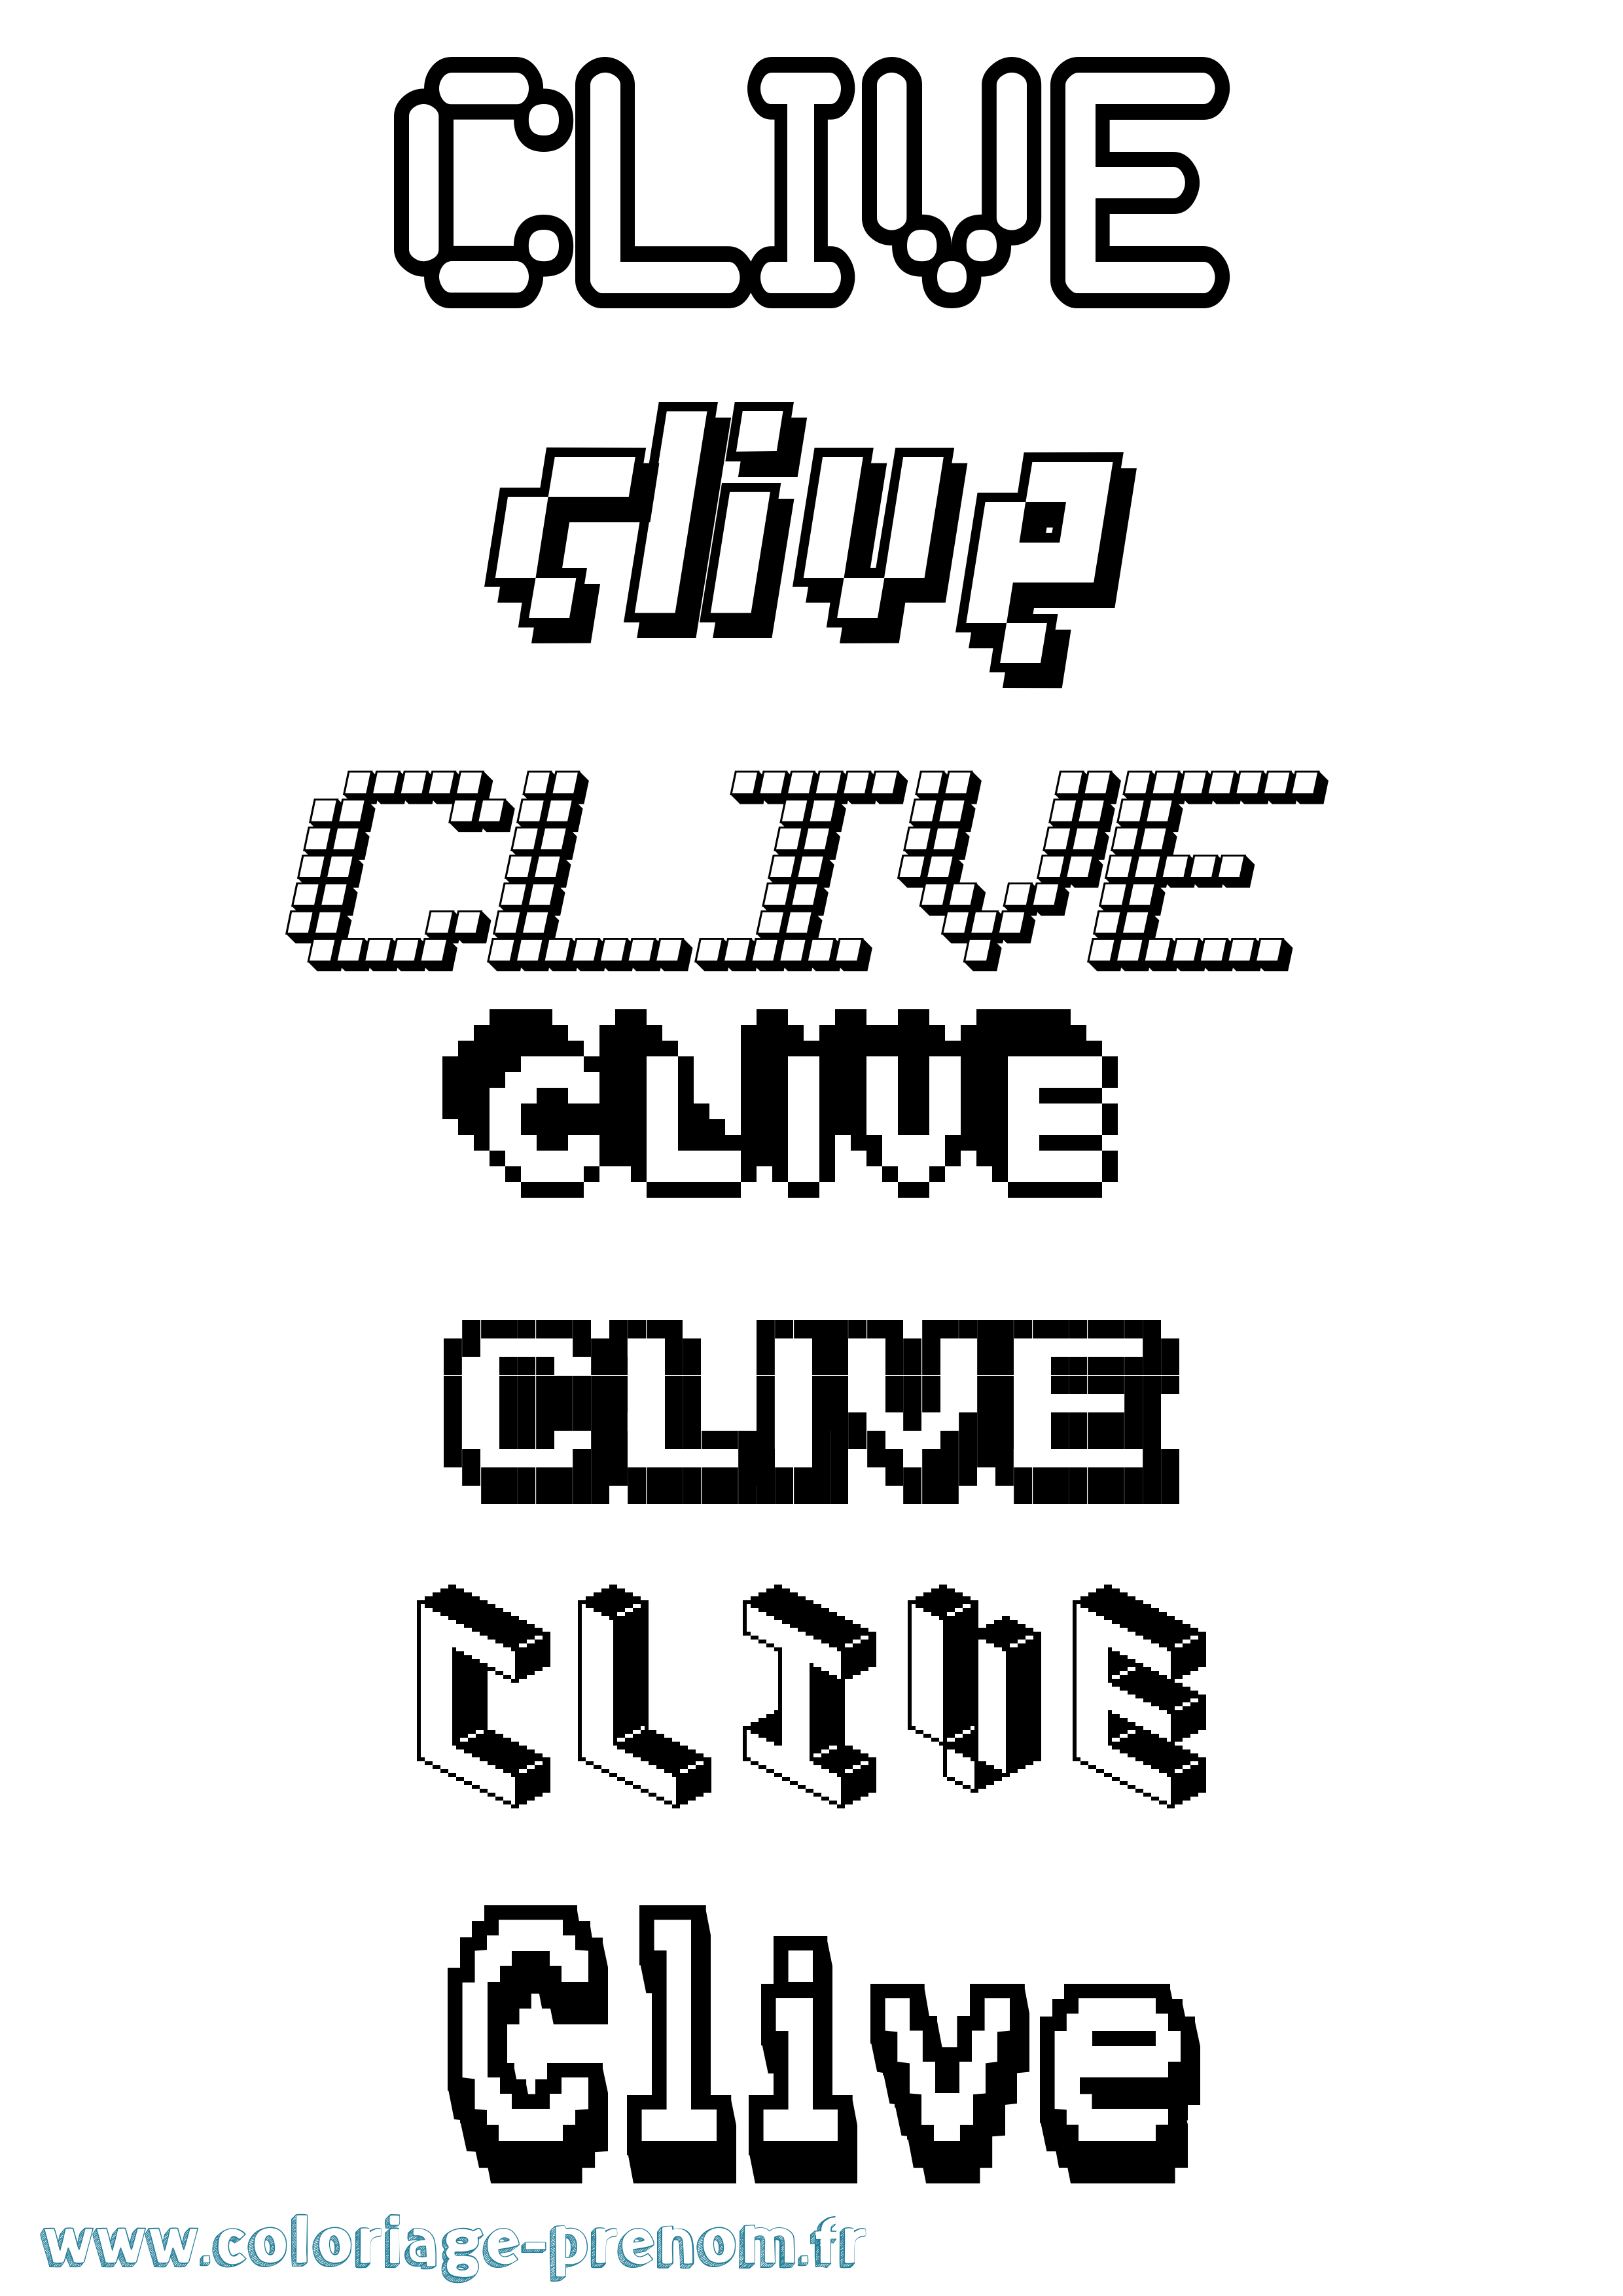 Coloriage prénom Clive Pixel